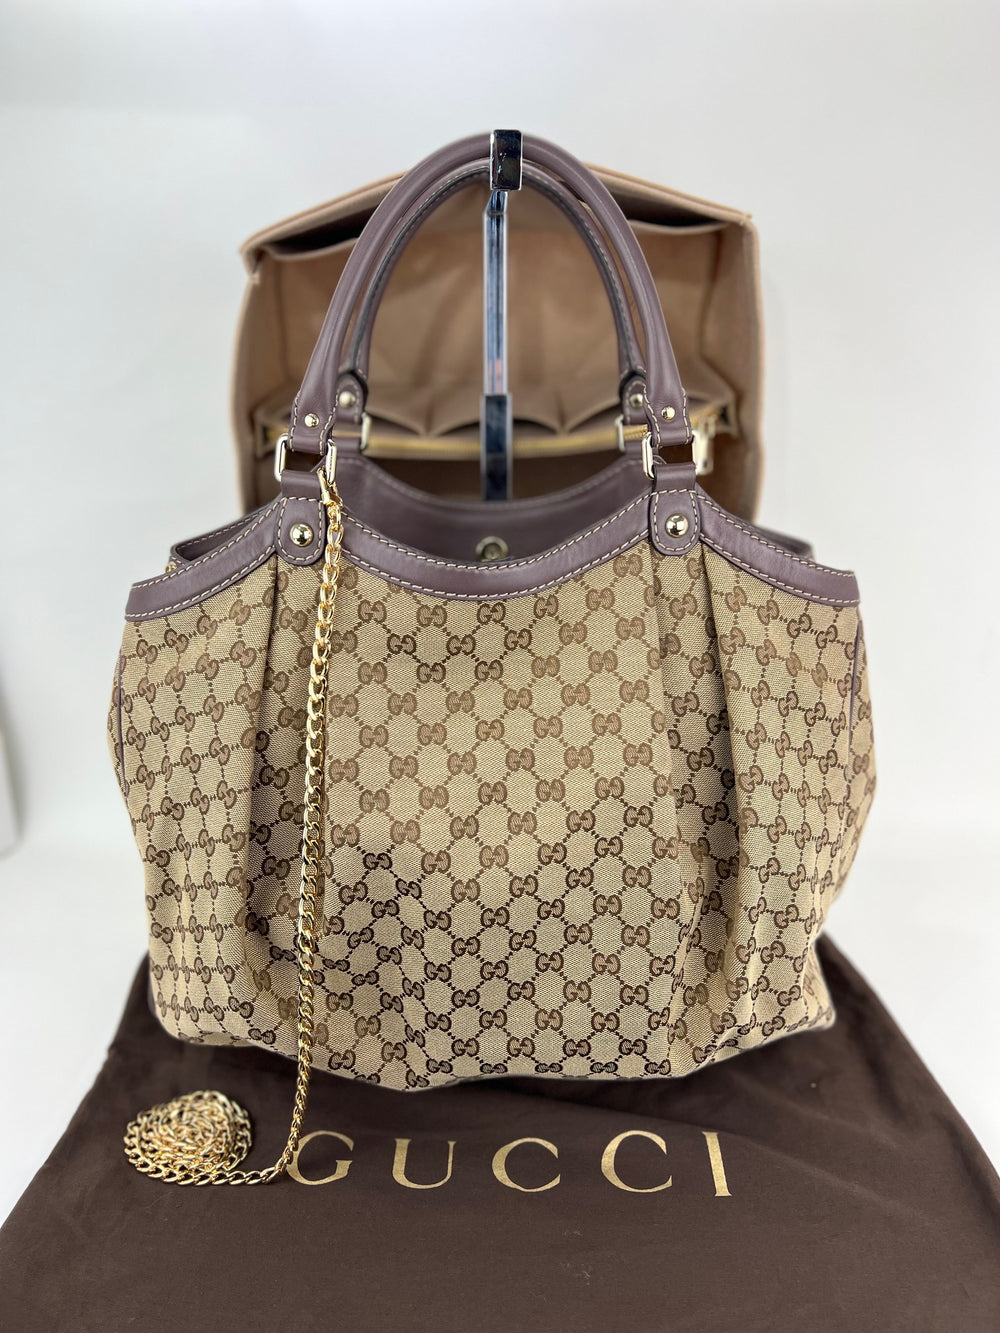 Gucci sukey bag canvas - Gem